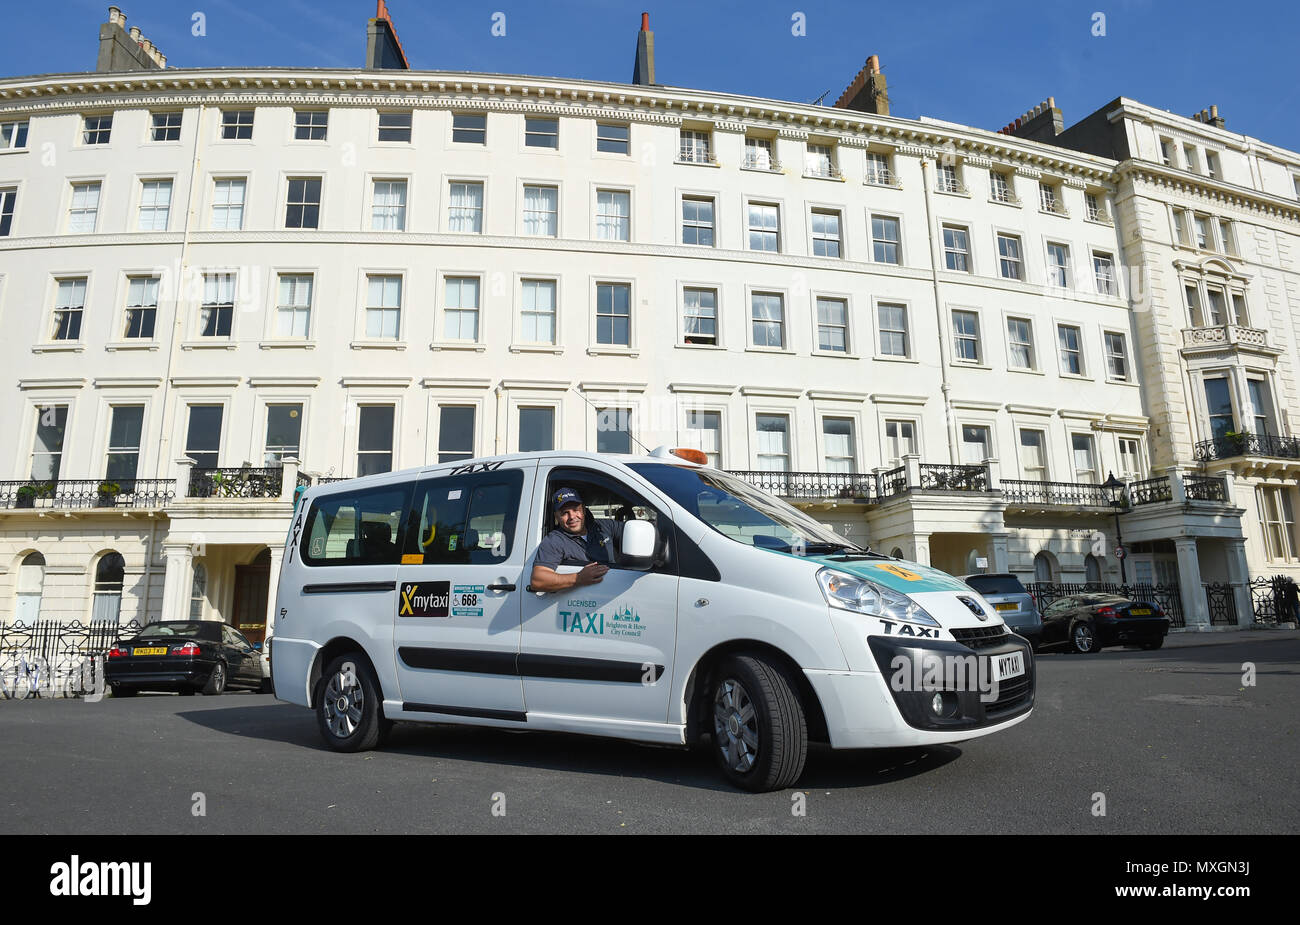 Brighton Regno Unito 4 Giugno - mytaxi - il tuo taxi con licenza app lancia in Brighton oggi con 50% di sconto su tutte le tariffe fino alla fine di giugno del credito: Simon Dack/Alamy Live News Foto Stock